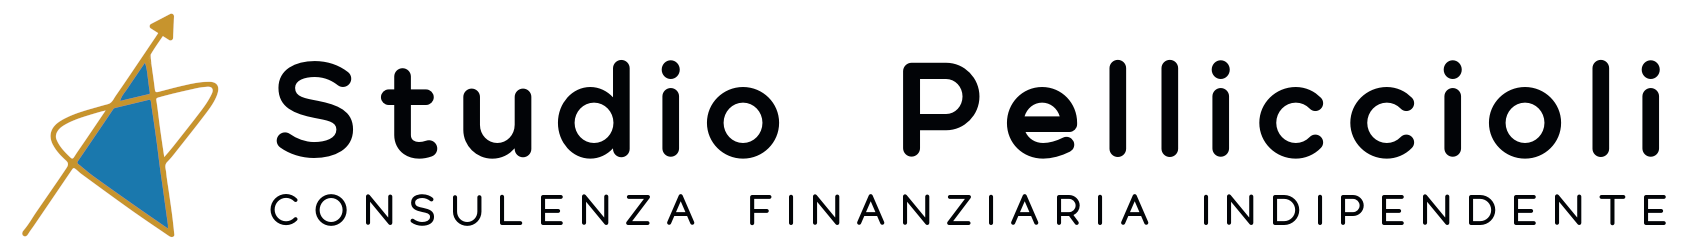 Il tuo consulente finanziario indipendente a Modena e provincia logo